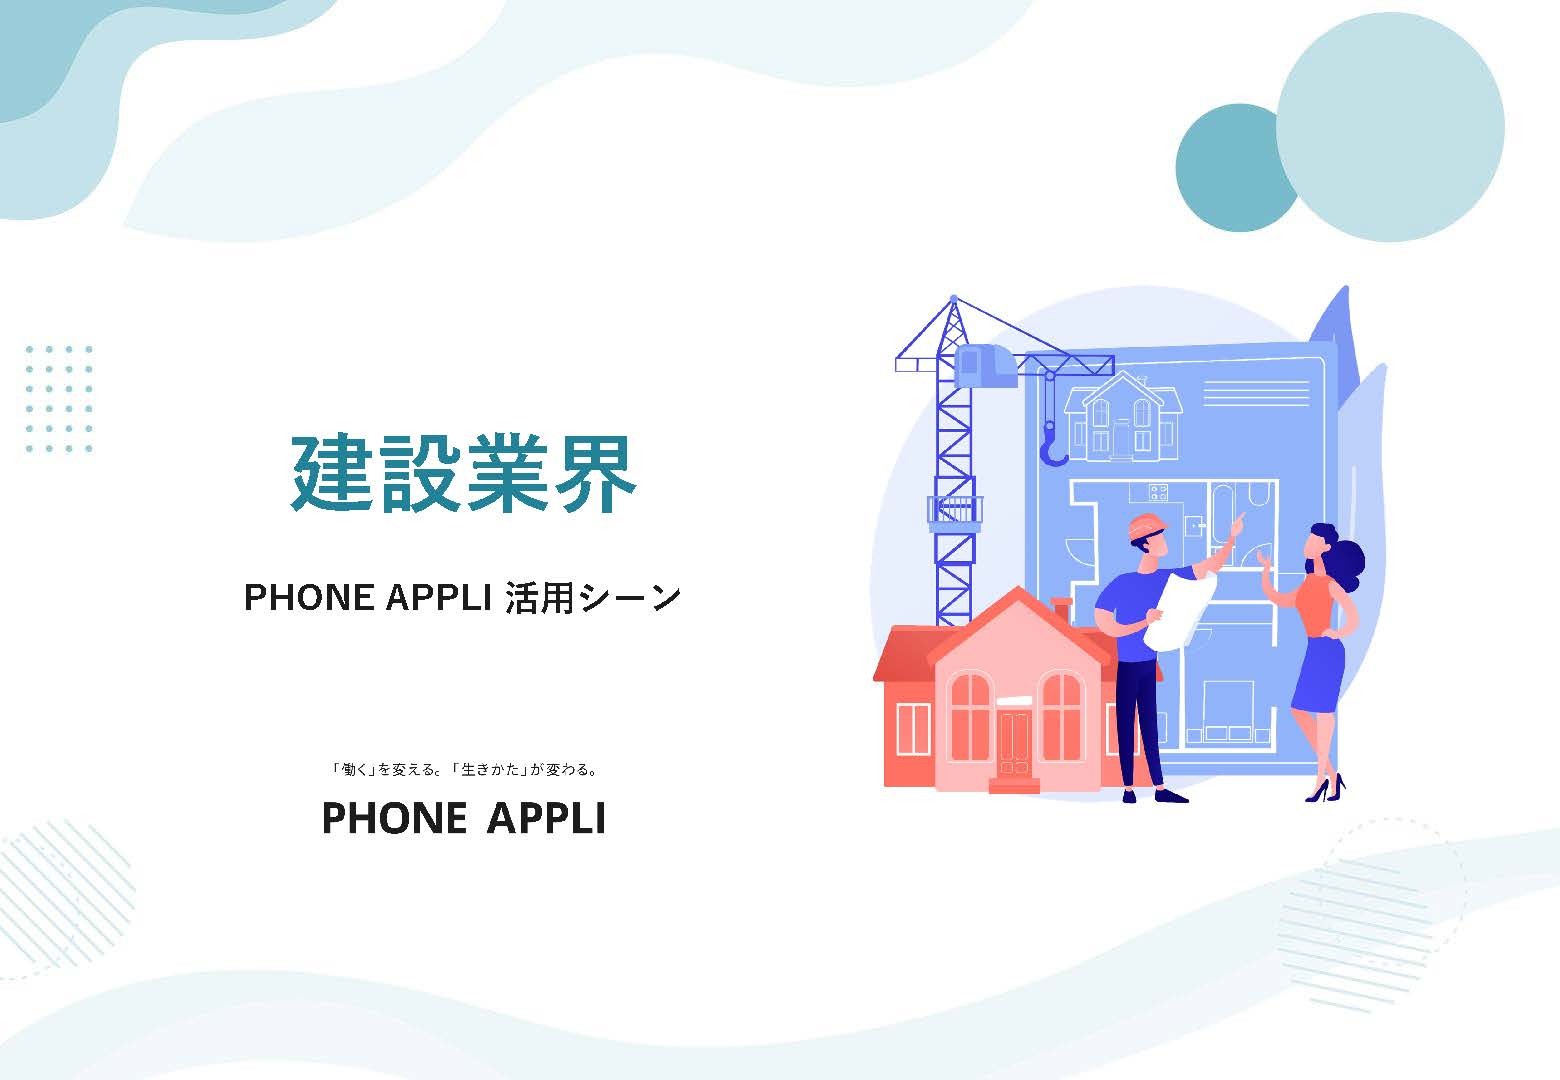 【建設業界向け】PHONE APPLI活用シーン